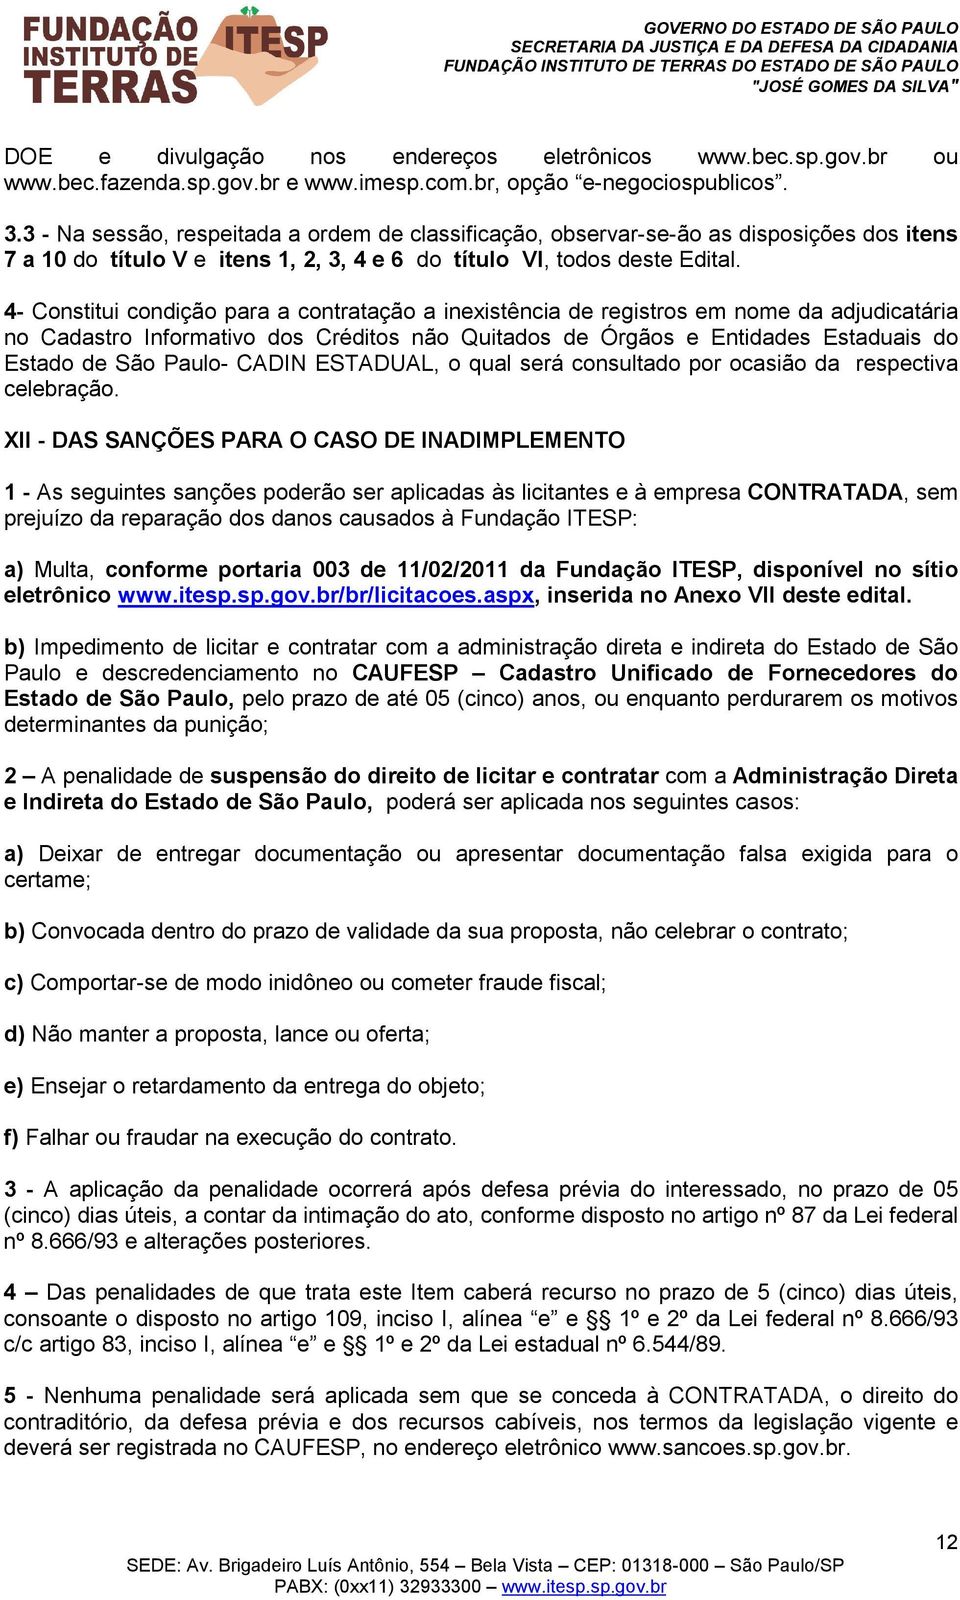 4- Constitui condição para a contratação a inexistência de registros em nome da adjudicatária no Cadastro Informativo dos Créditos não Quitados de Órgãos e Entidades Estaduais do Estado de São Paulo-